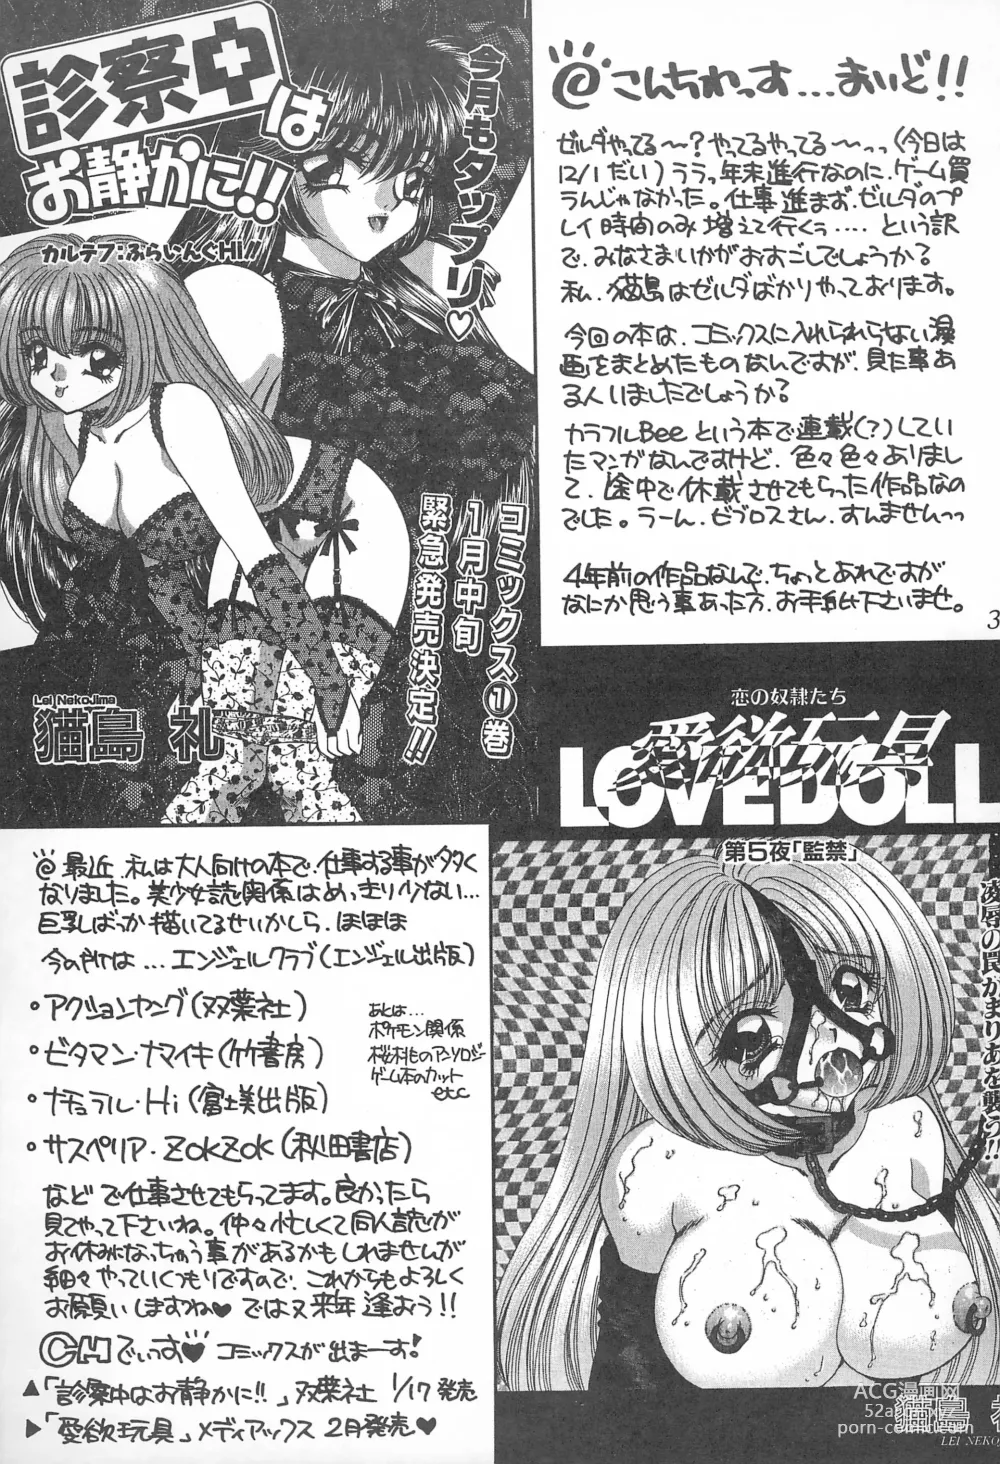 Page 37 of doujinshi MAX 6